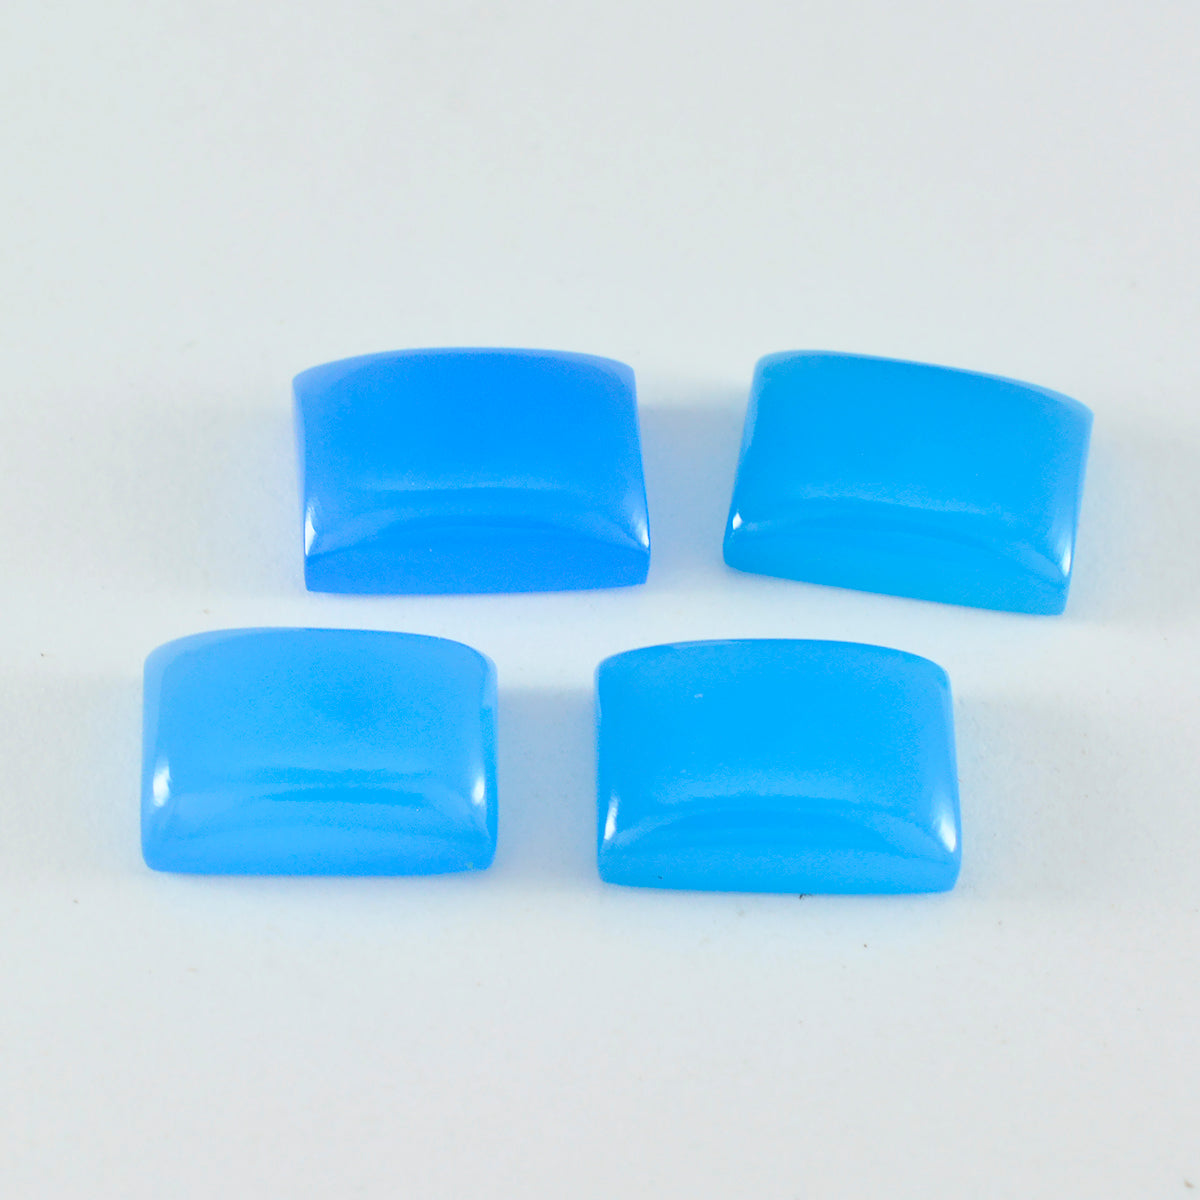 riyogems 1pc cabochon di calcedonio blu 10x12 mm forma ottagonale gemme di bella qualità